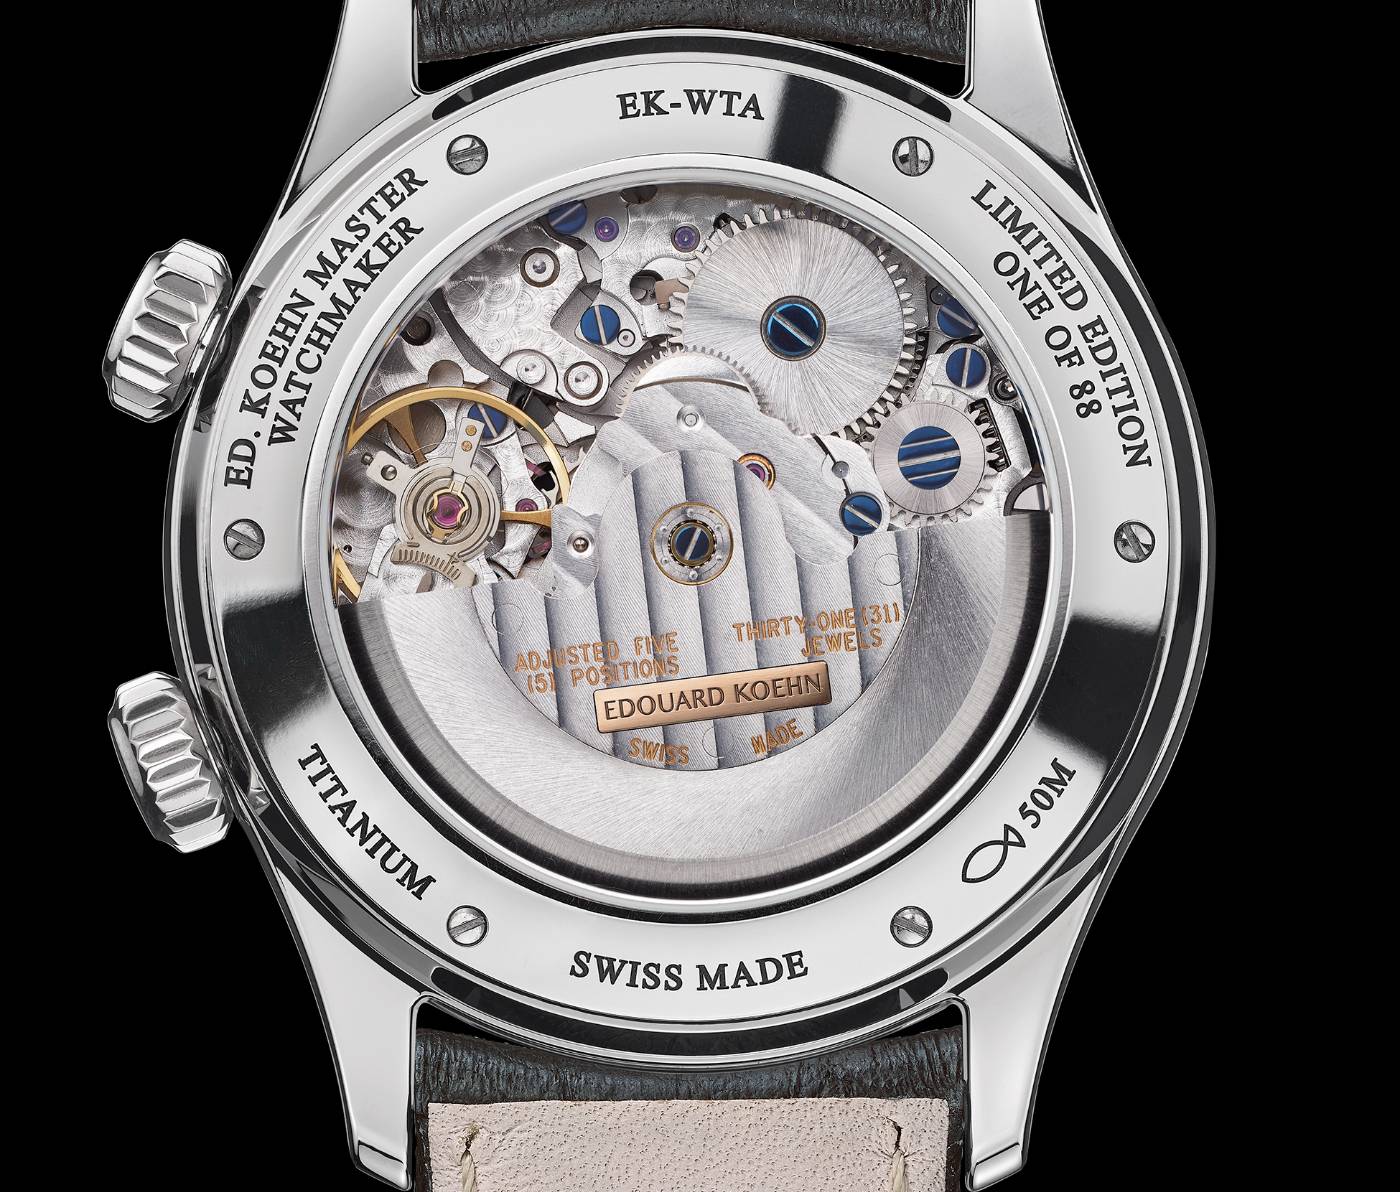 Presentando el reloj “World Heritage“ de Edouard Koehn